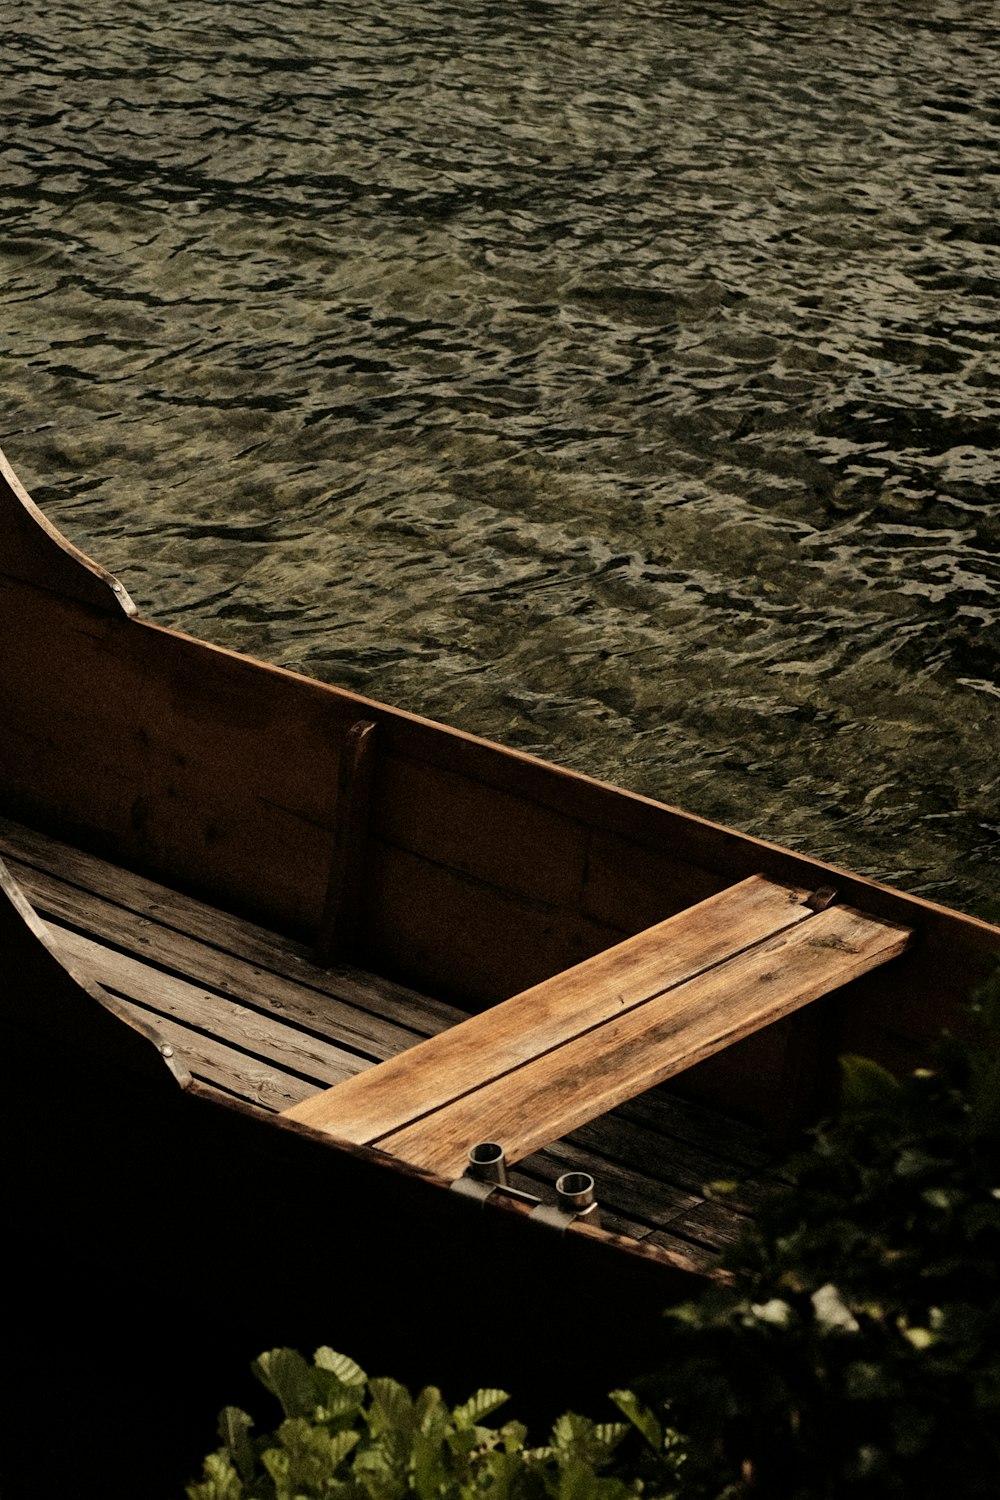 ein kleines Holzboot, das auf einem Gewässer schwimmt